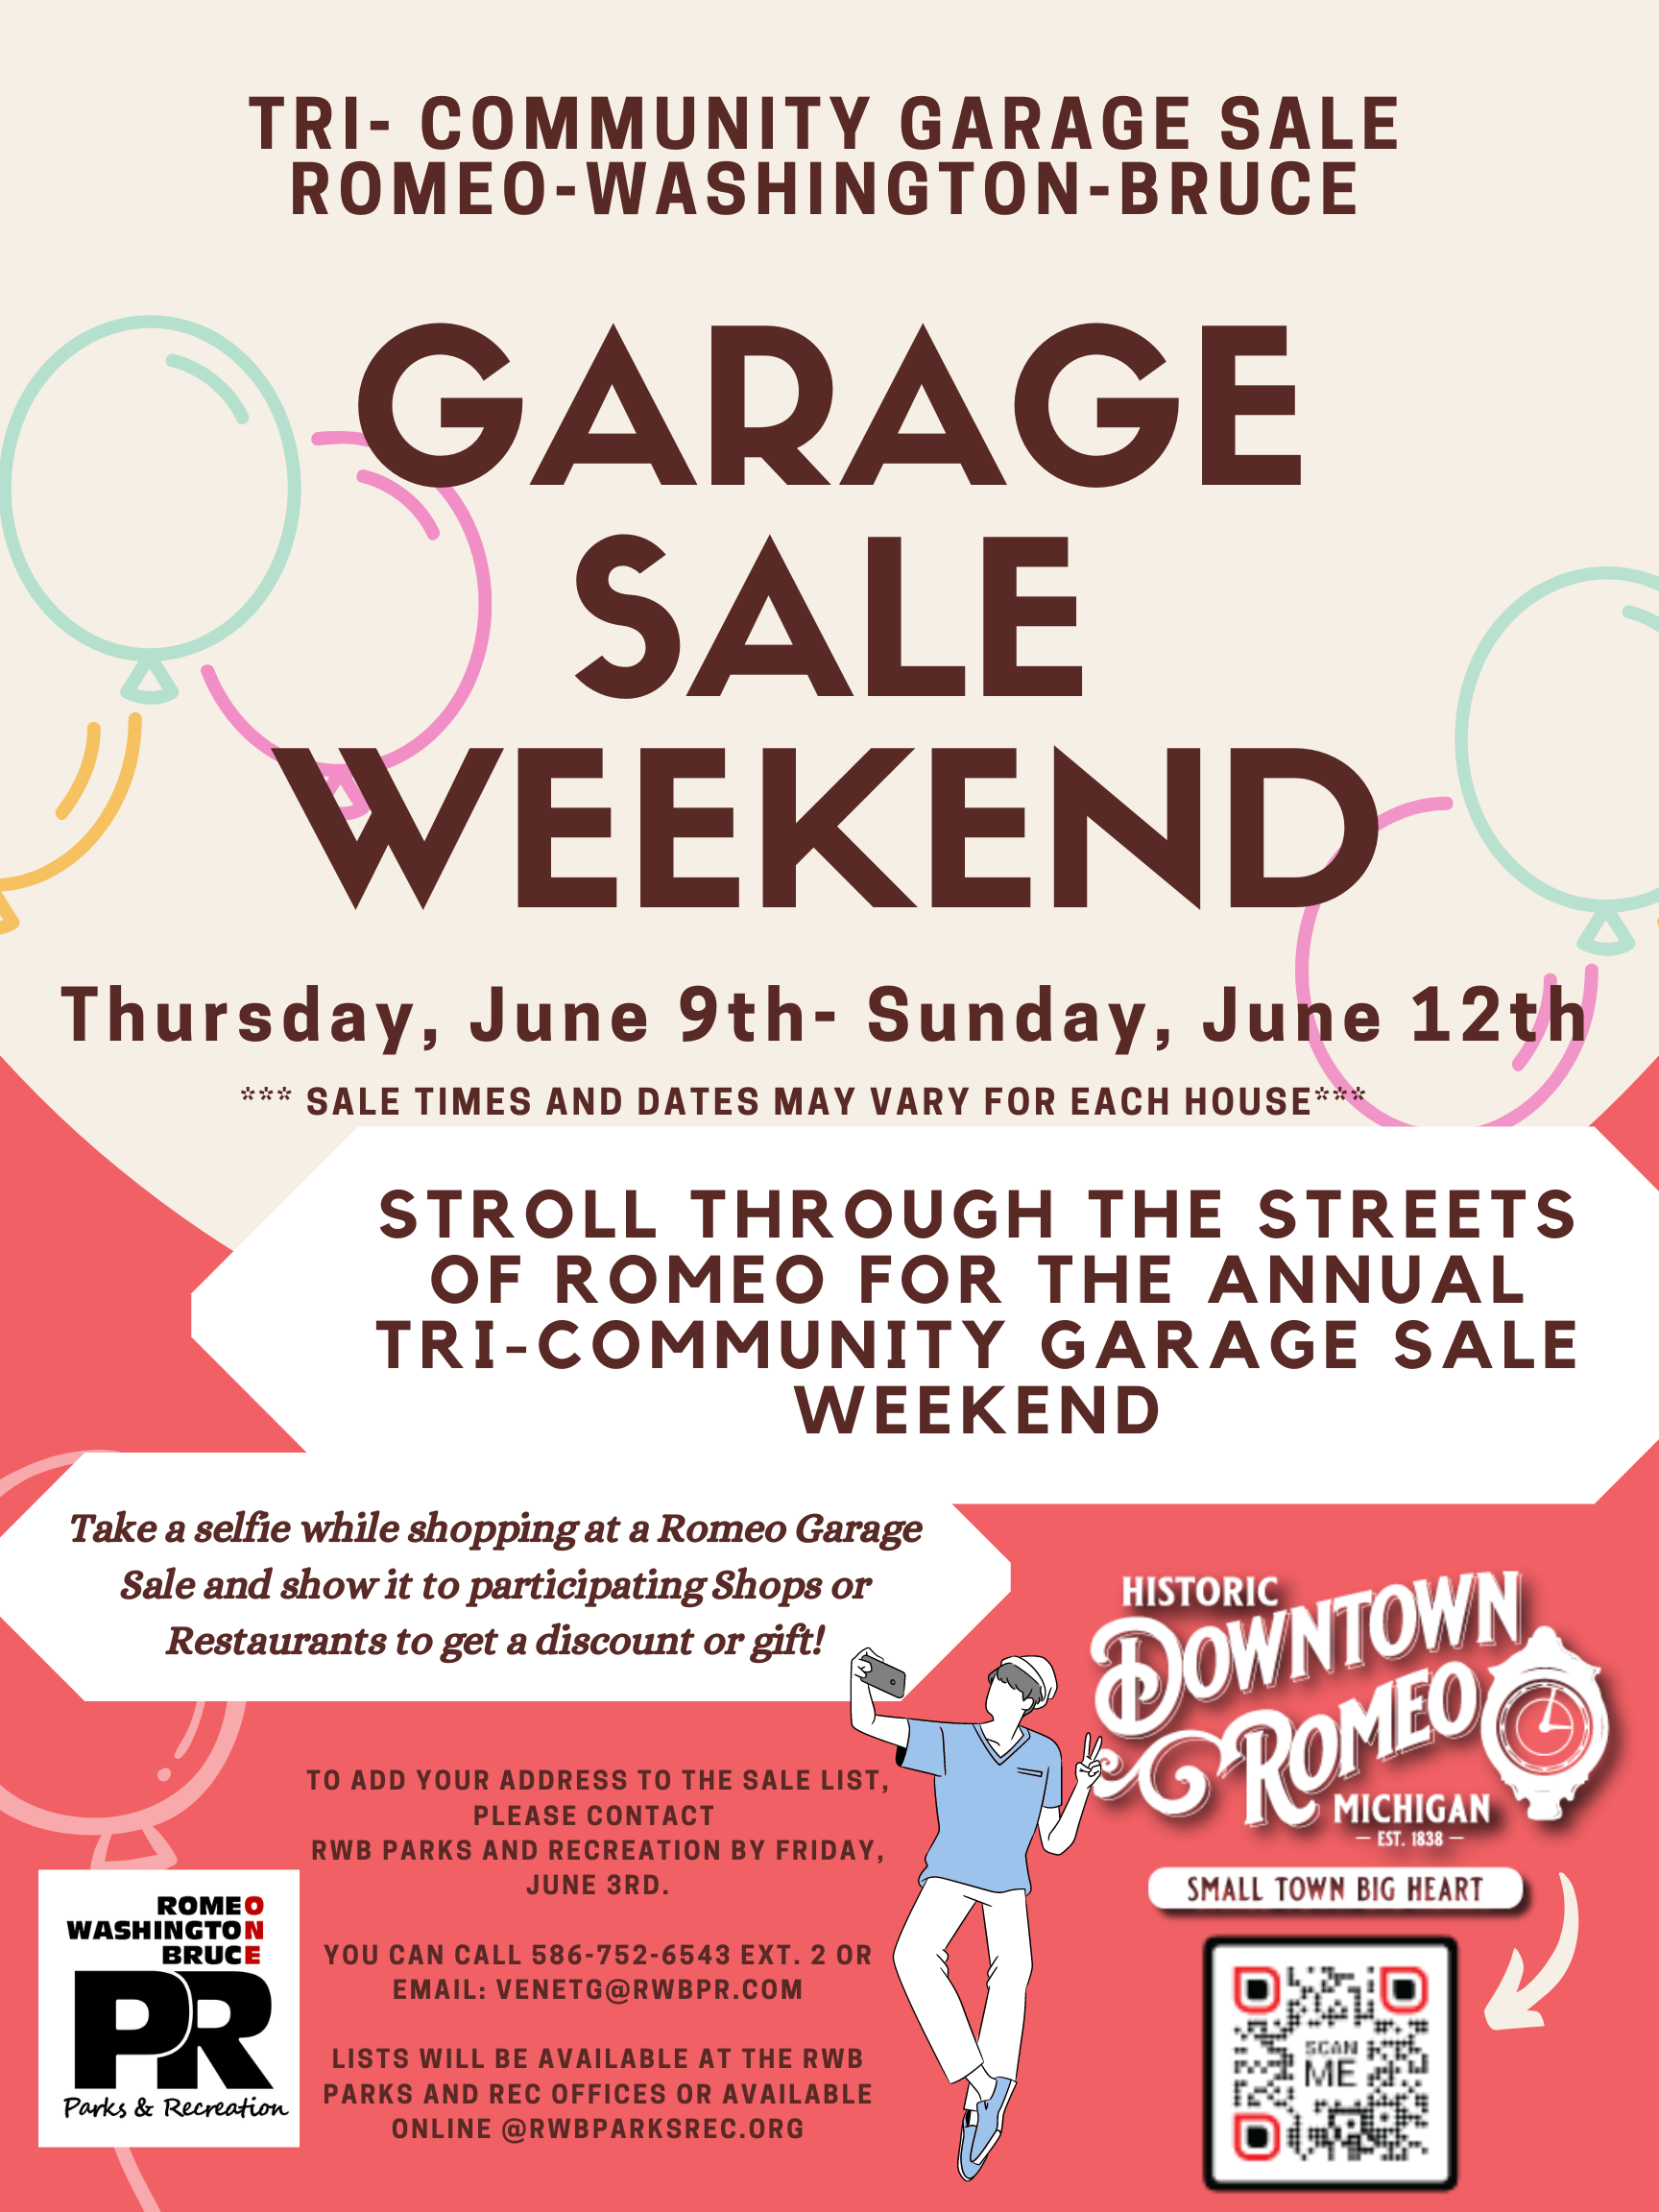 Tri-Community Garage Sale Weekend – Romeo DDA